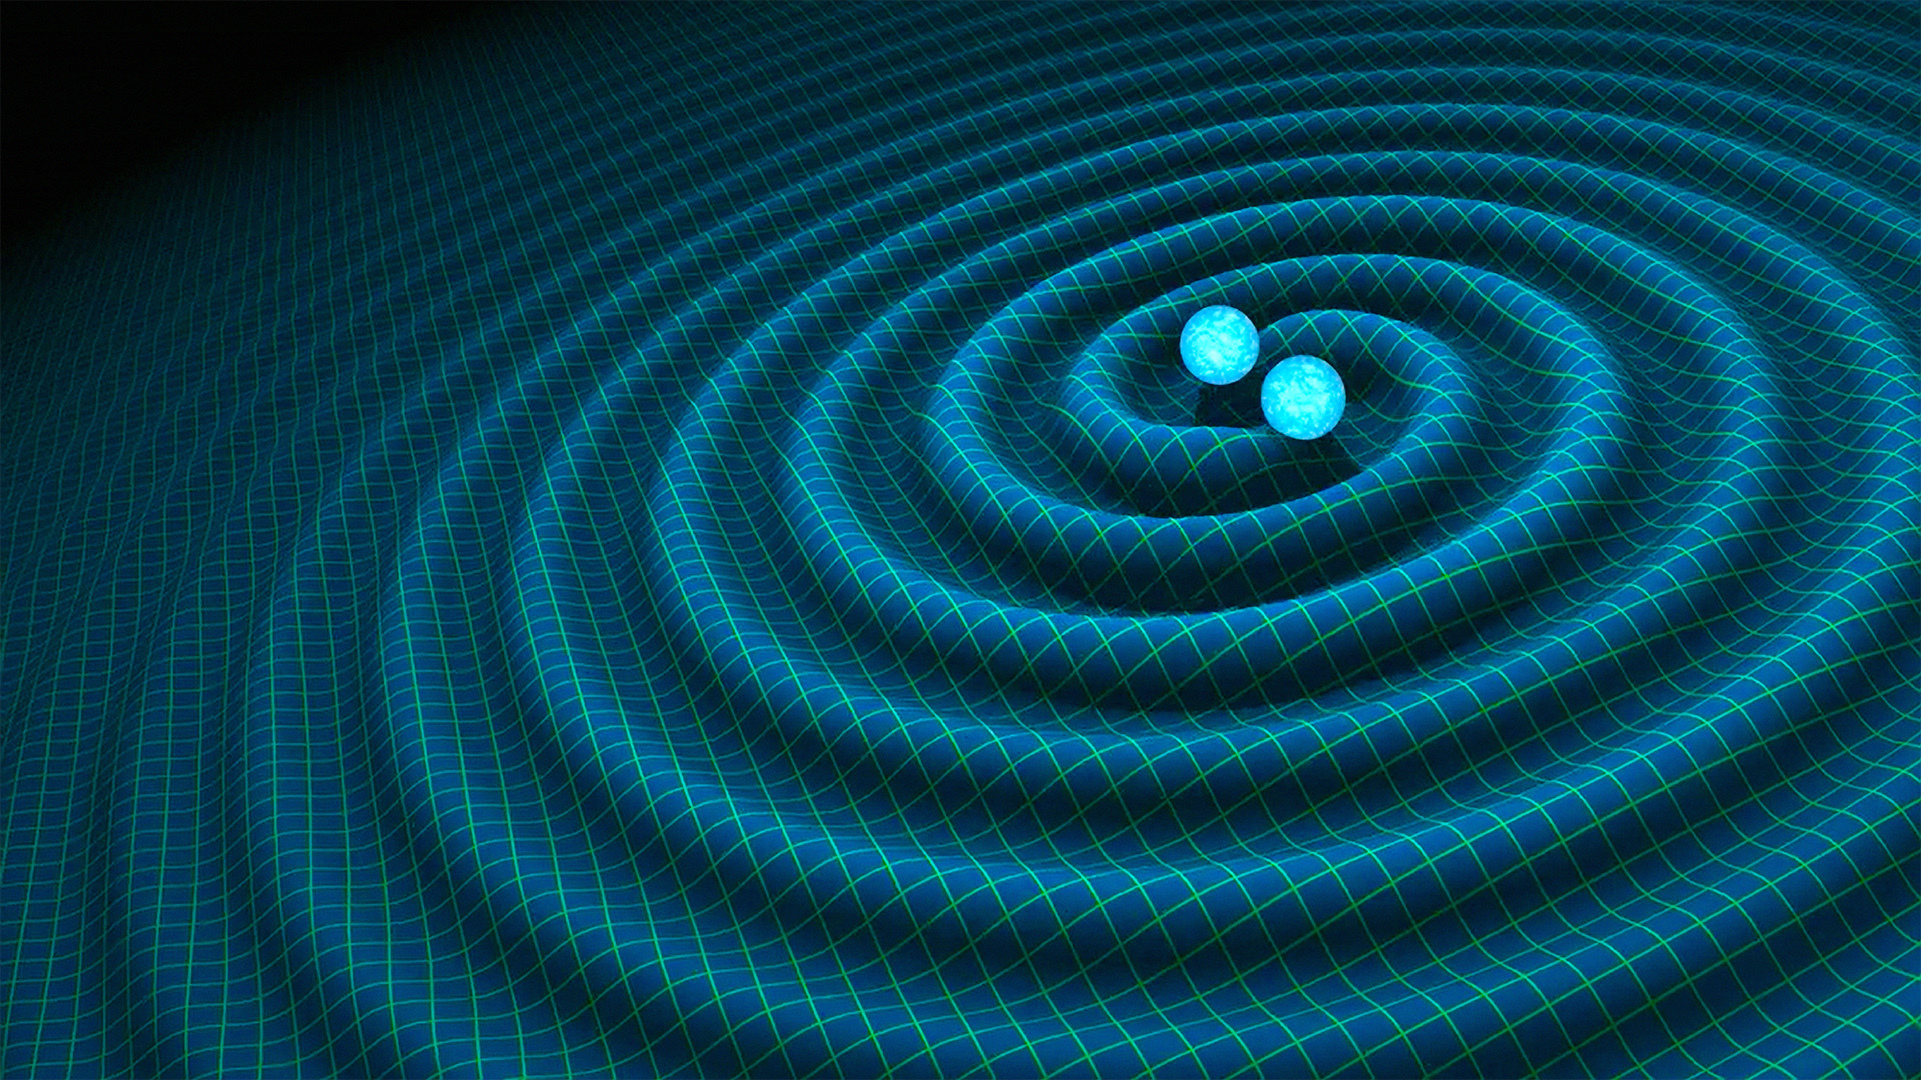 Umjetnička ilustracija gravitacijskih valova. Izvor: nasa.gov